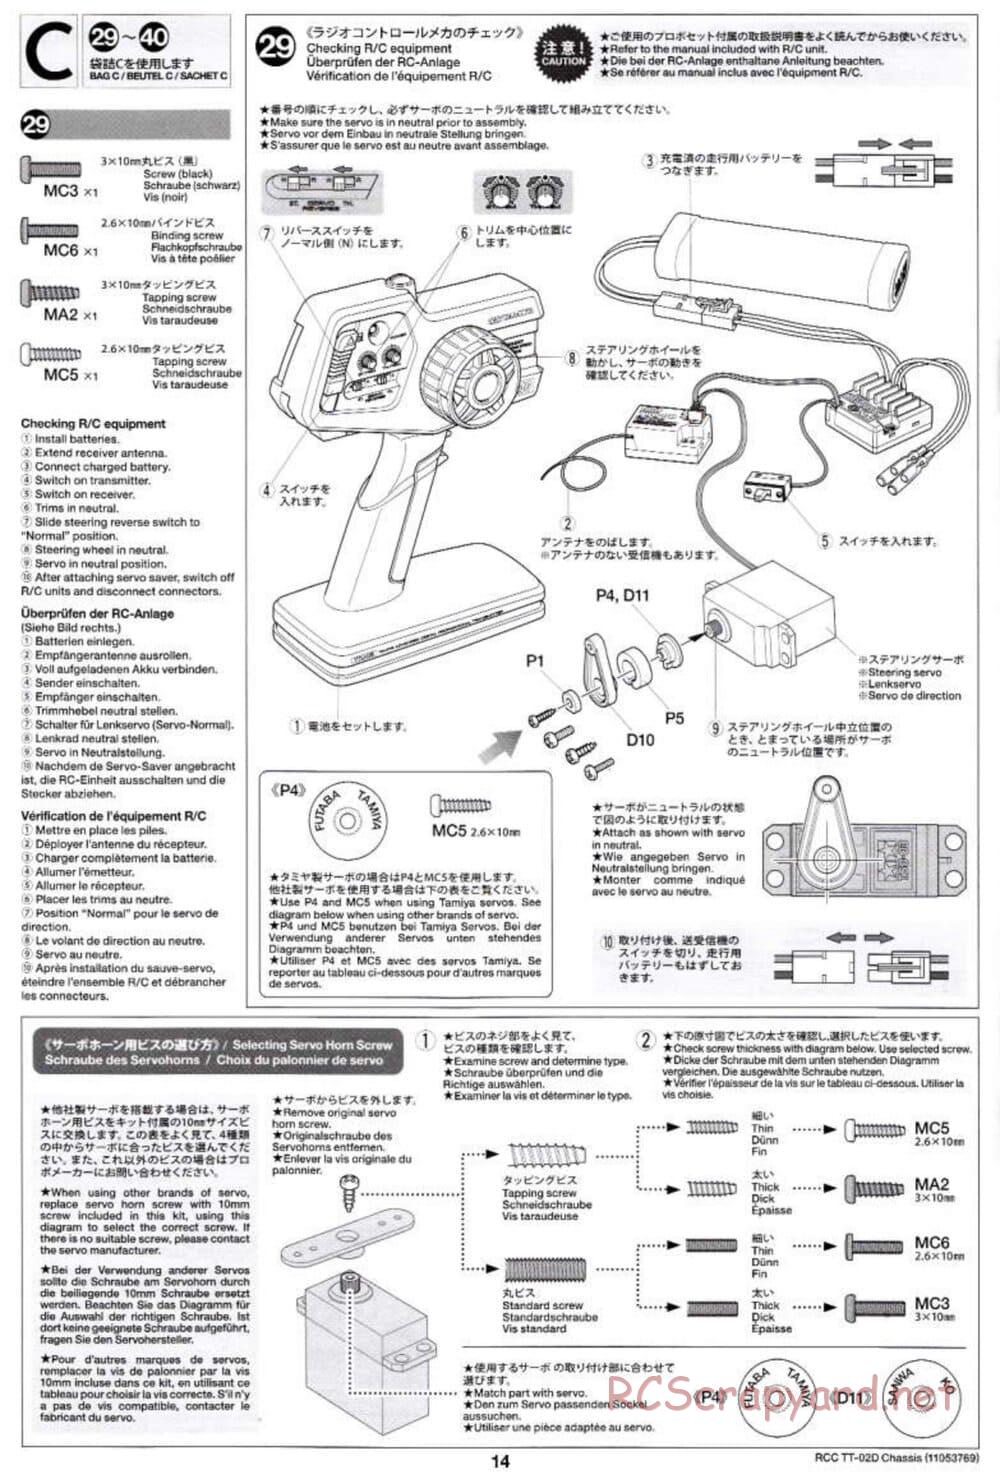 Tamiya - TT-02D Chassis - Manual - Page 14